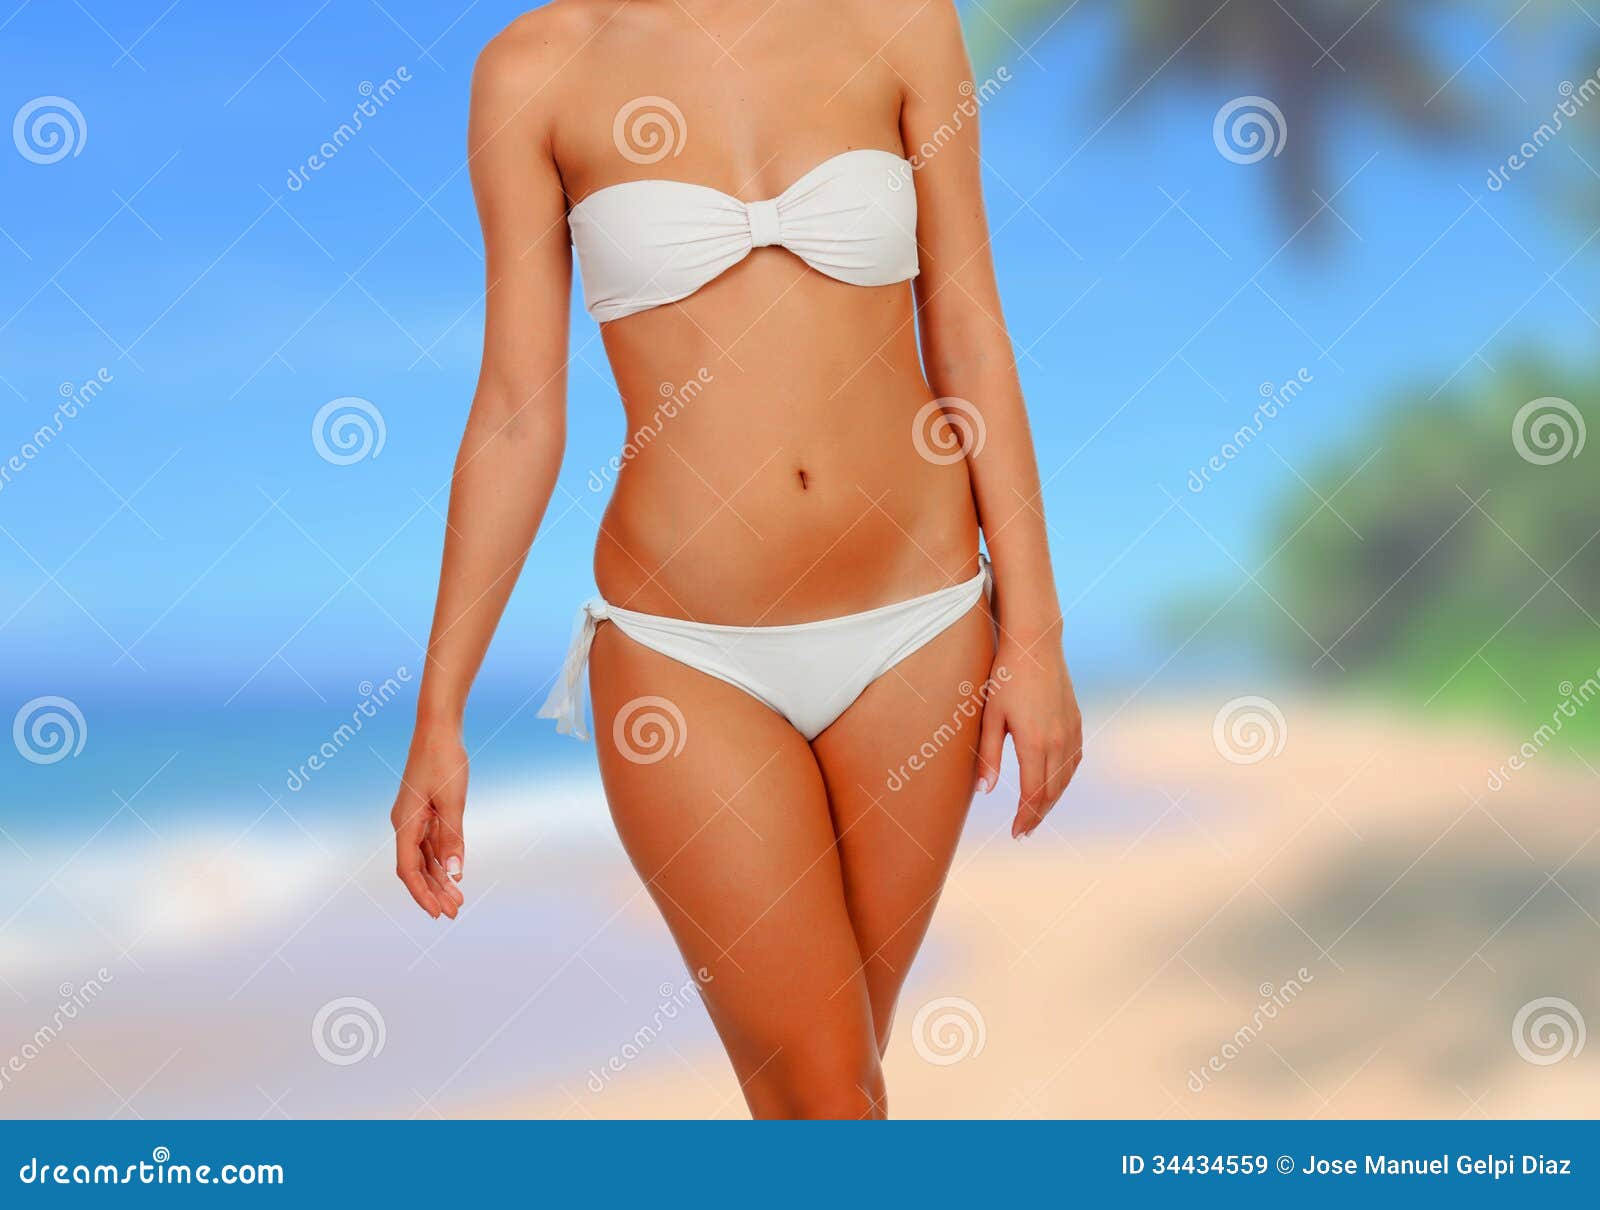 white woman Bikini